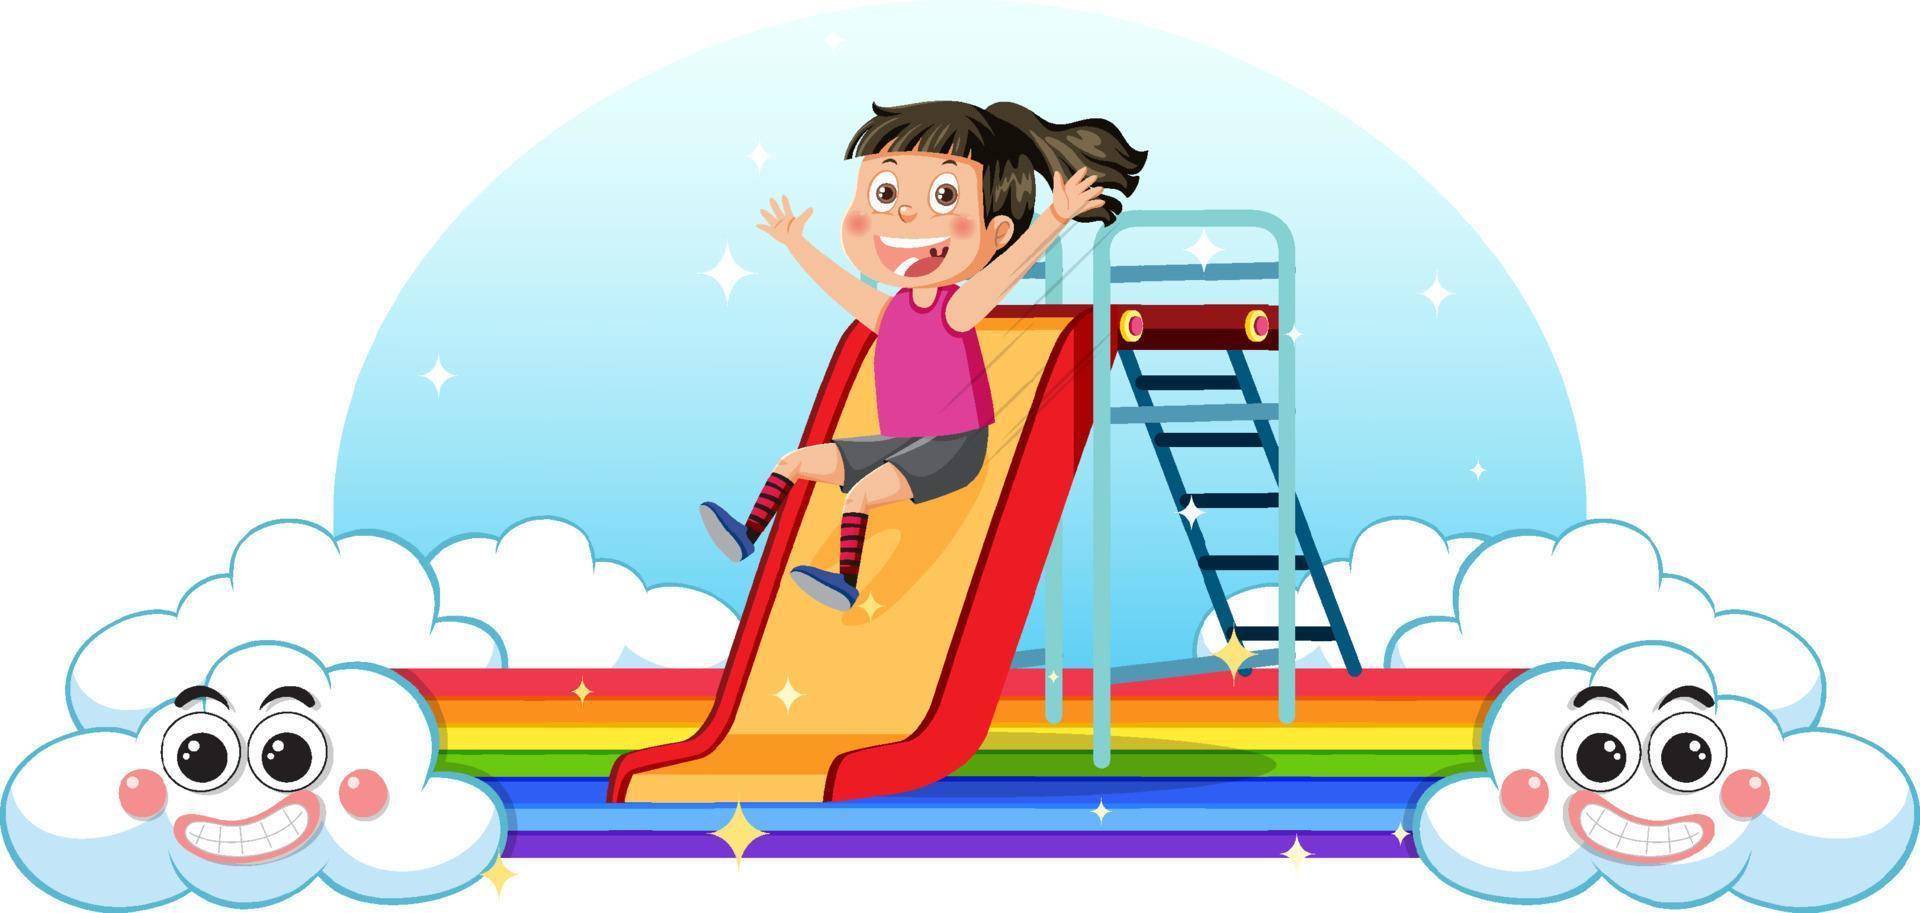 A girl on slide with rainbow vector